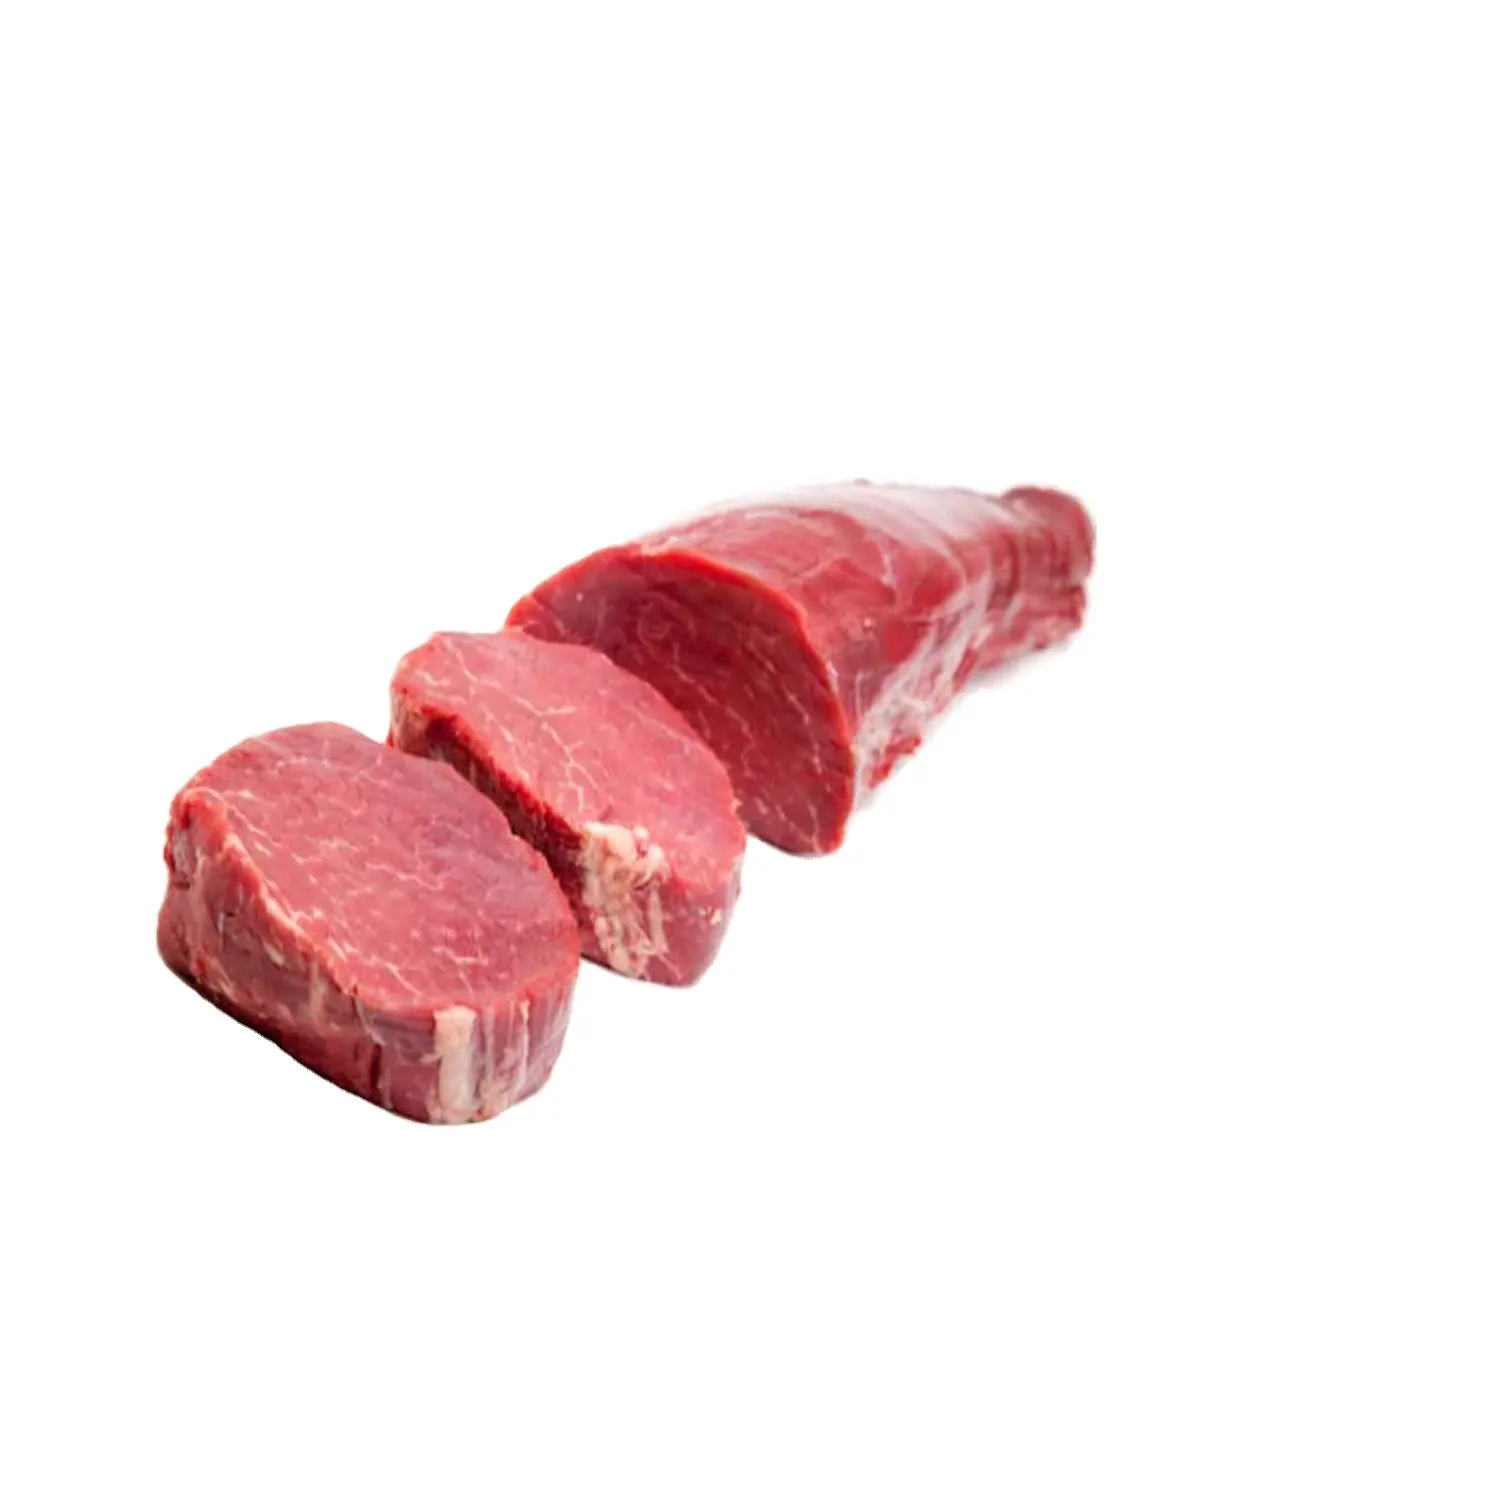 Carne di manzo di bufalo fresca corpo congelato stile sfuso imballaggio per alimenti caratteristica biologica zucchero tipo di origine